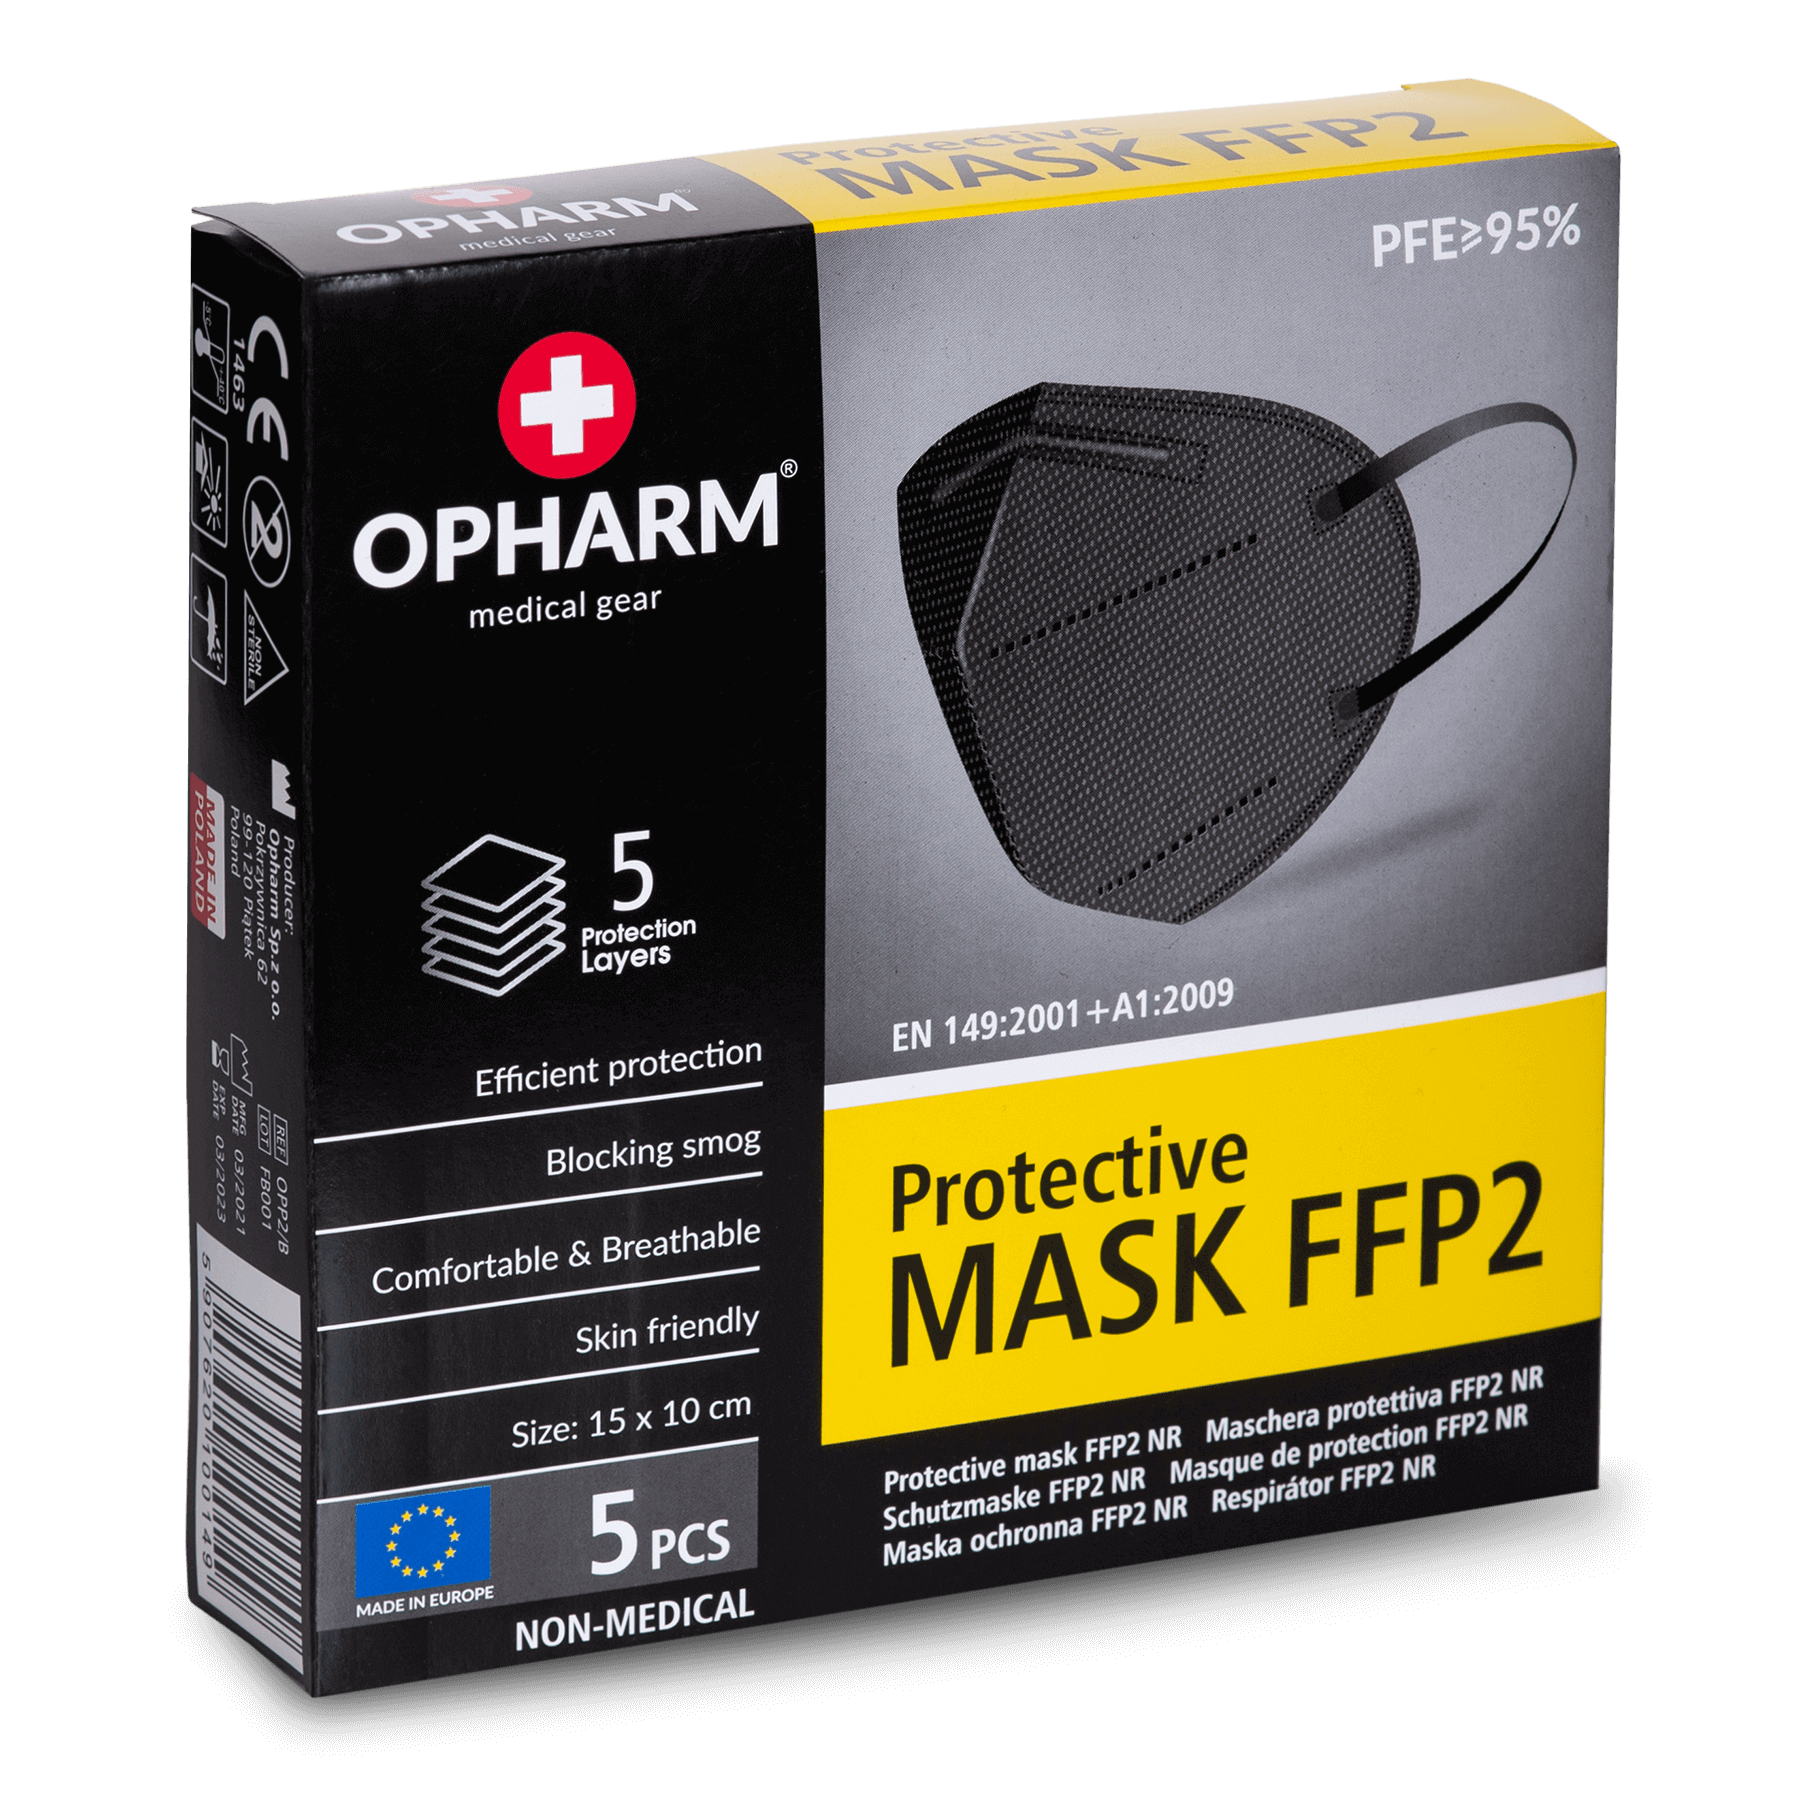 Lot de 840 masque ffp2 noir (84 boite de 10 pcs) - Conforama